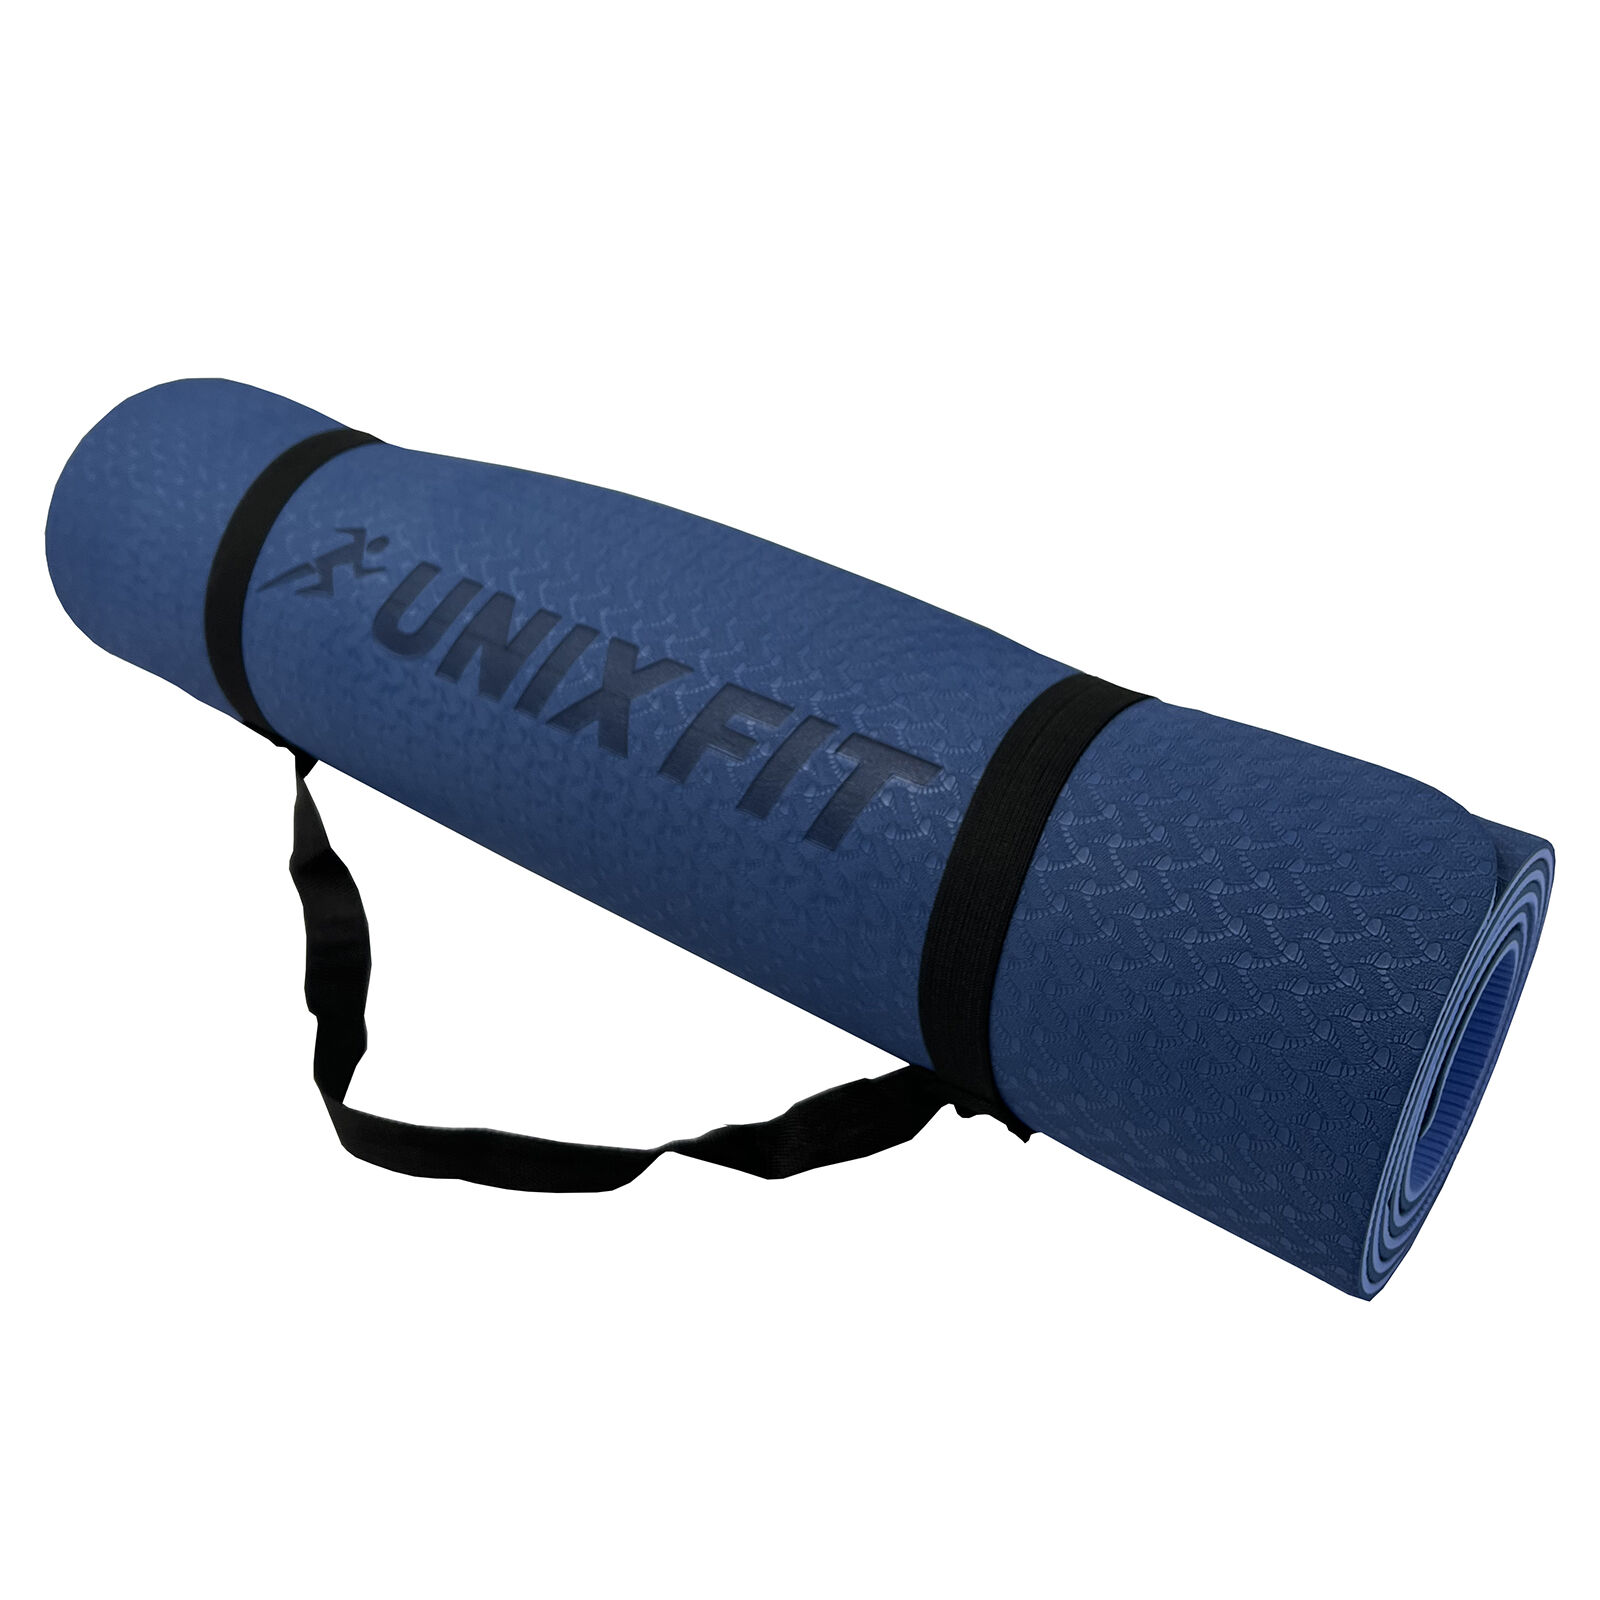 Коврик для йоги и фитнеса UNIX Fit двусторонний, 180 х 61 х 0,8 см, двуцветный, голубой UNIX Fit™ Коврики для йоги и фит